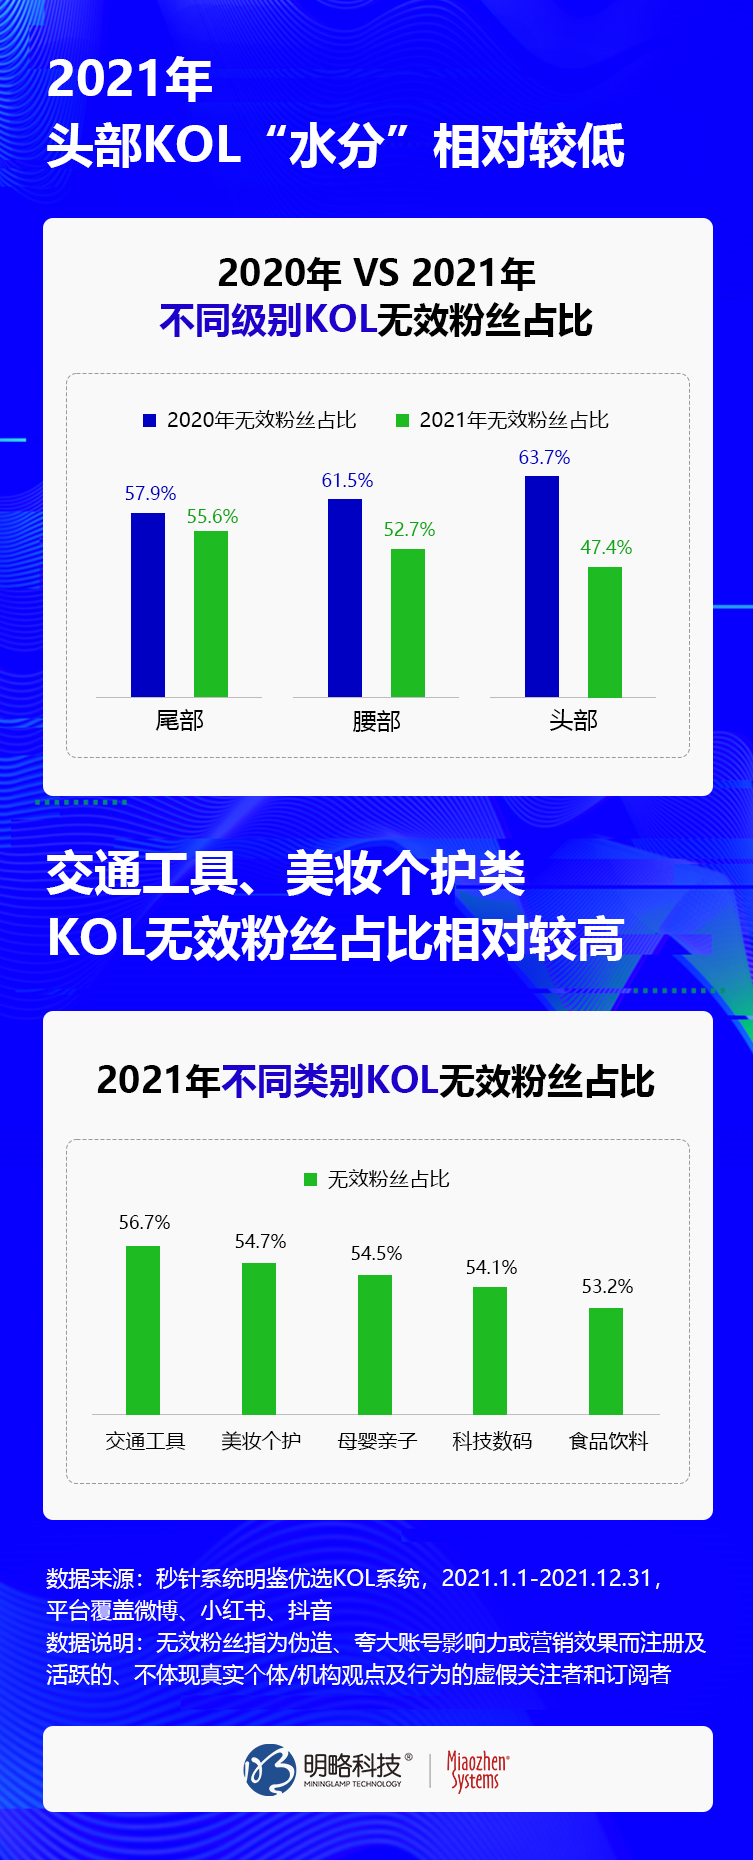 社交平台异常流量大幅降低10%，KOL无效粉丝首次下降5.7%